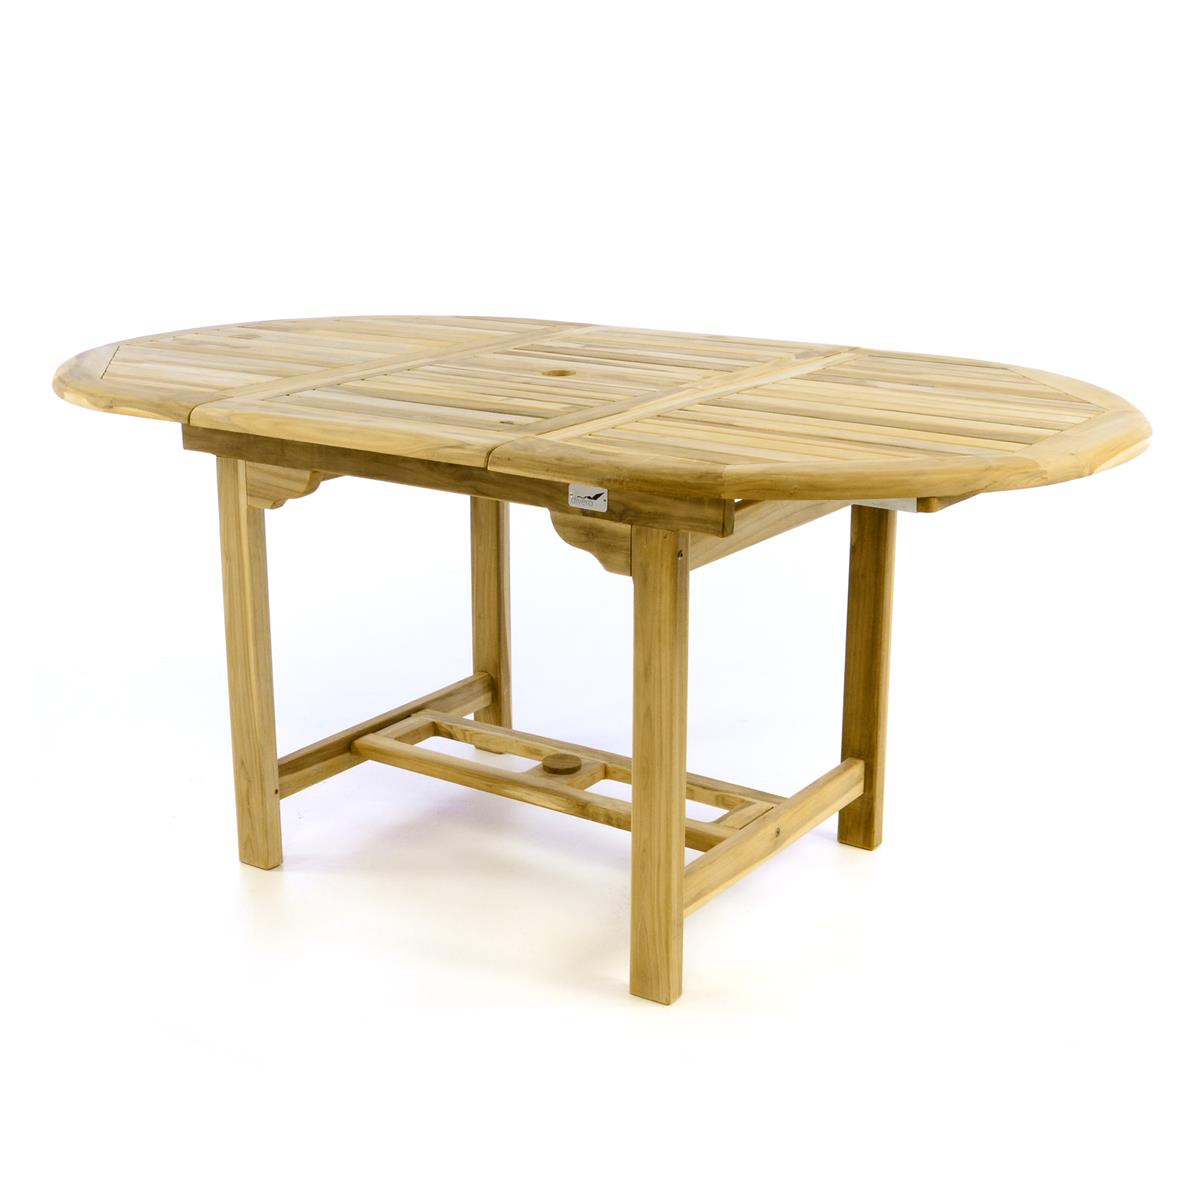 DIVERO Balkontisch Terrasse Tisch Esstisch ausziehbar 170cm Teak Holz natur